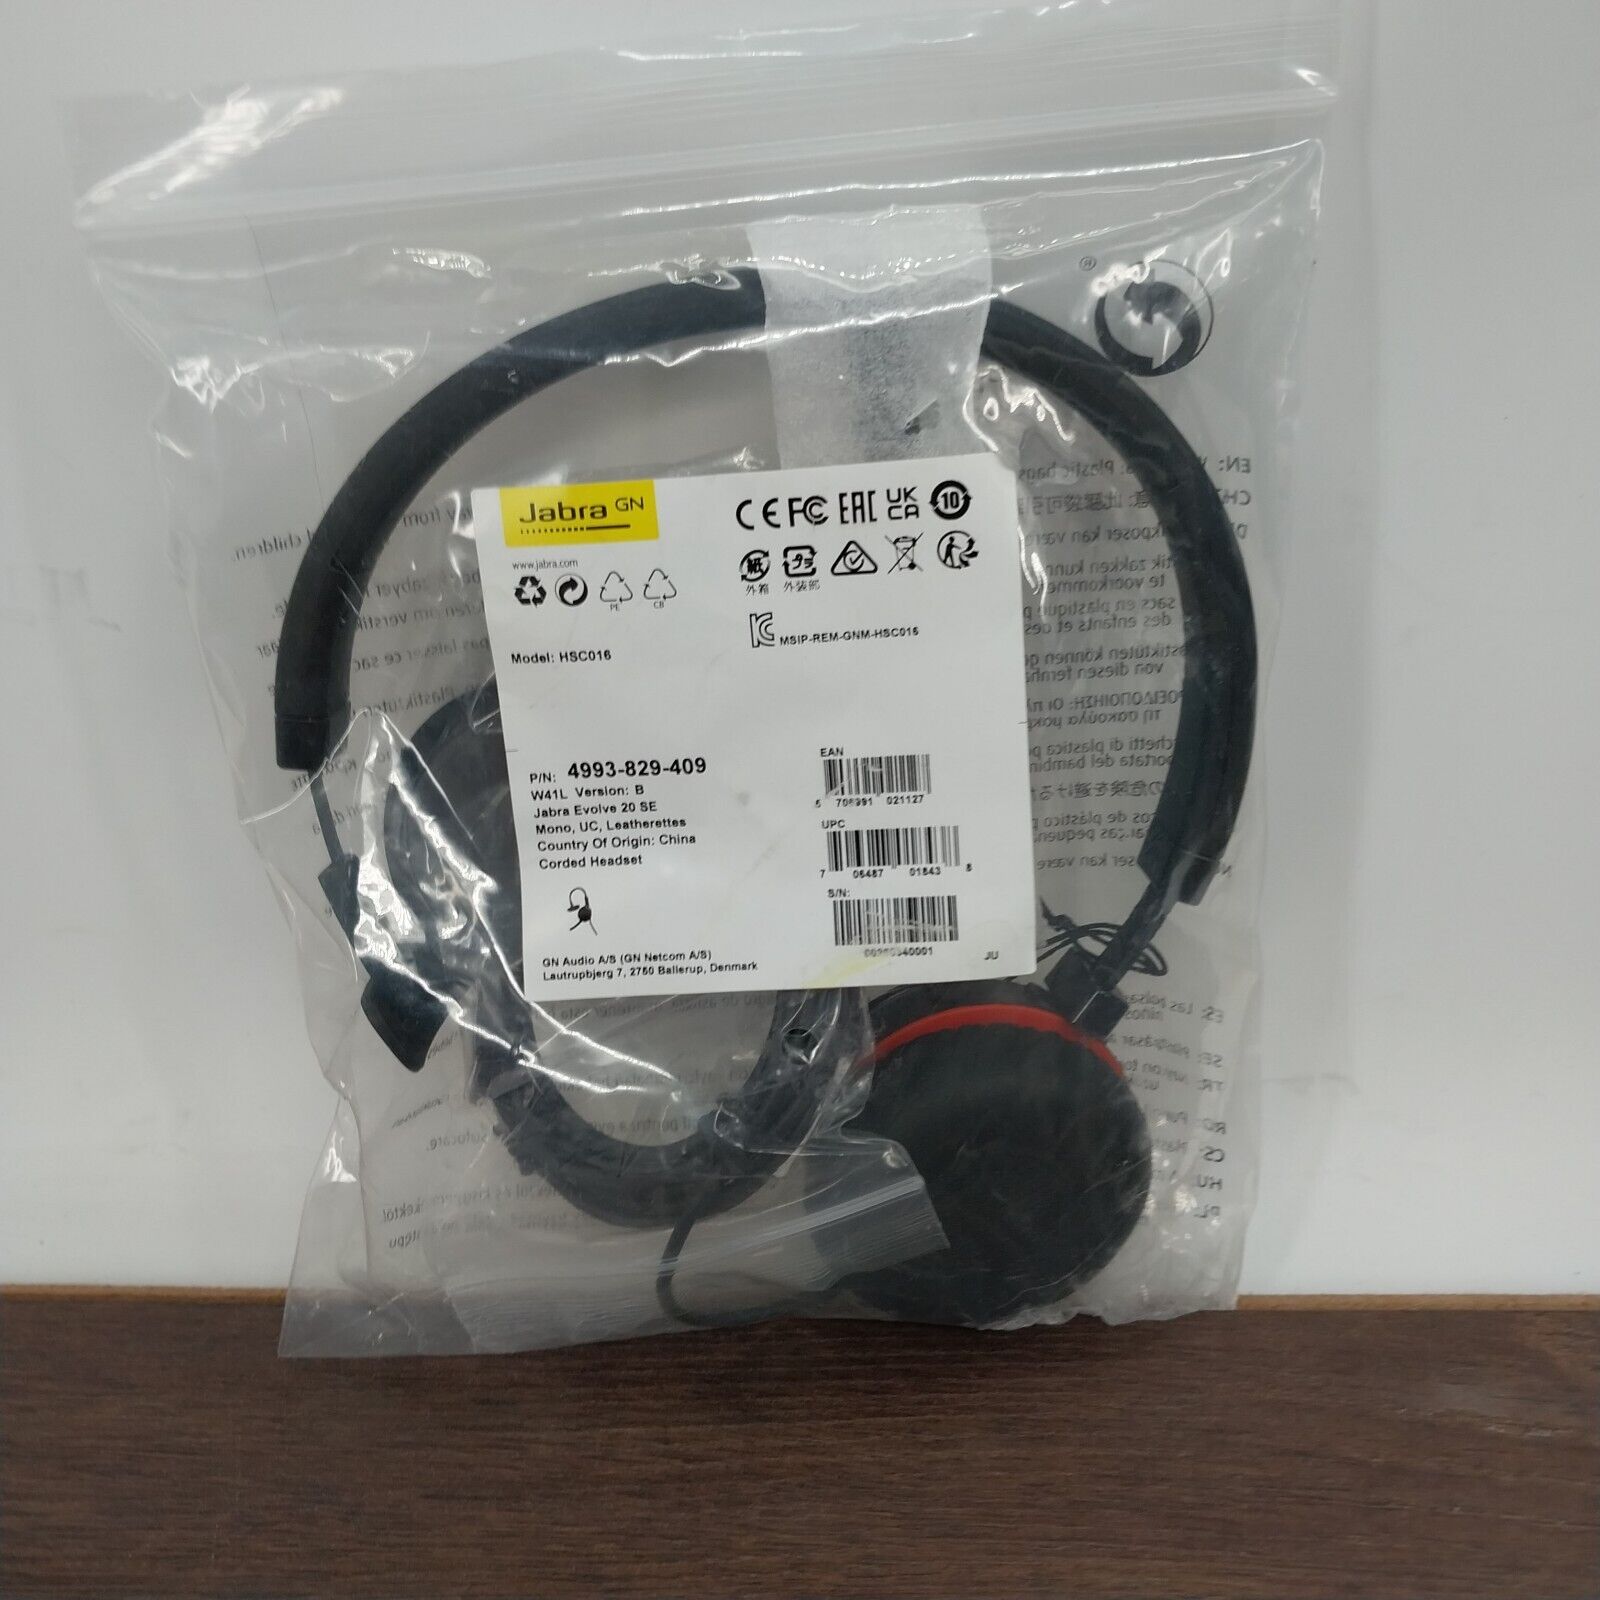 Jabra Evolve 20 SE GN HSC016 Stereo headset 4993-829-409 Open Box